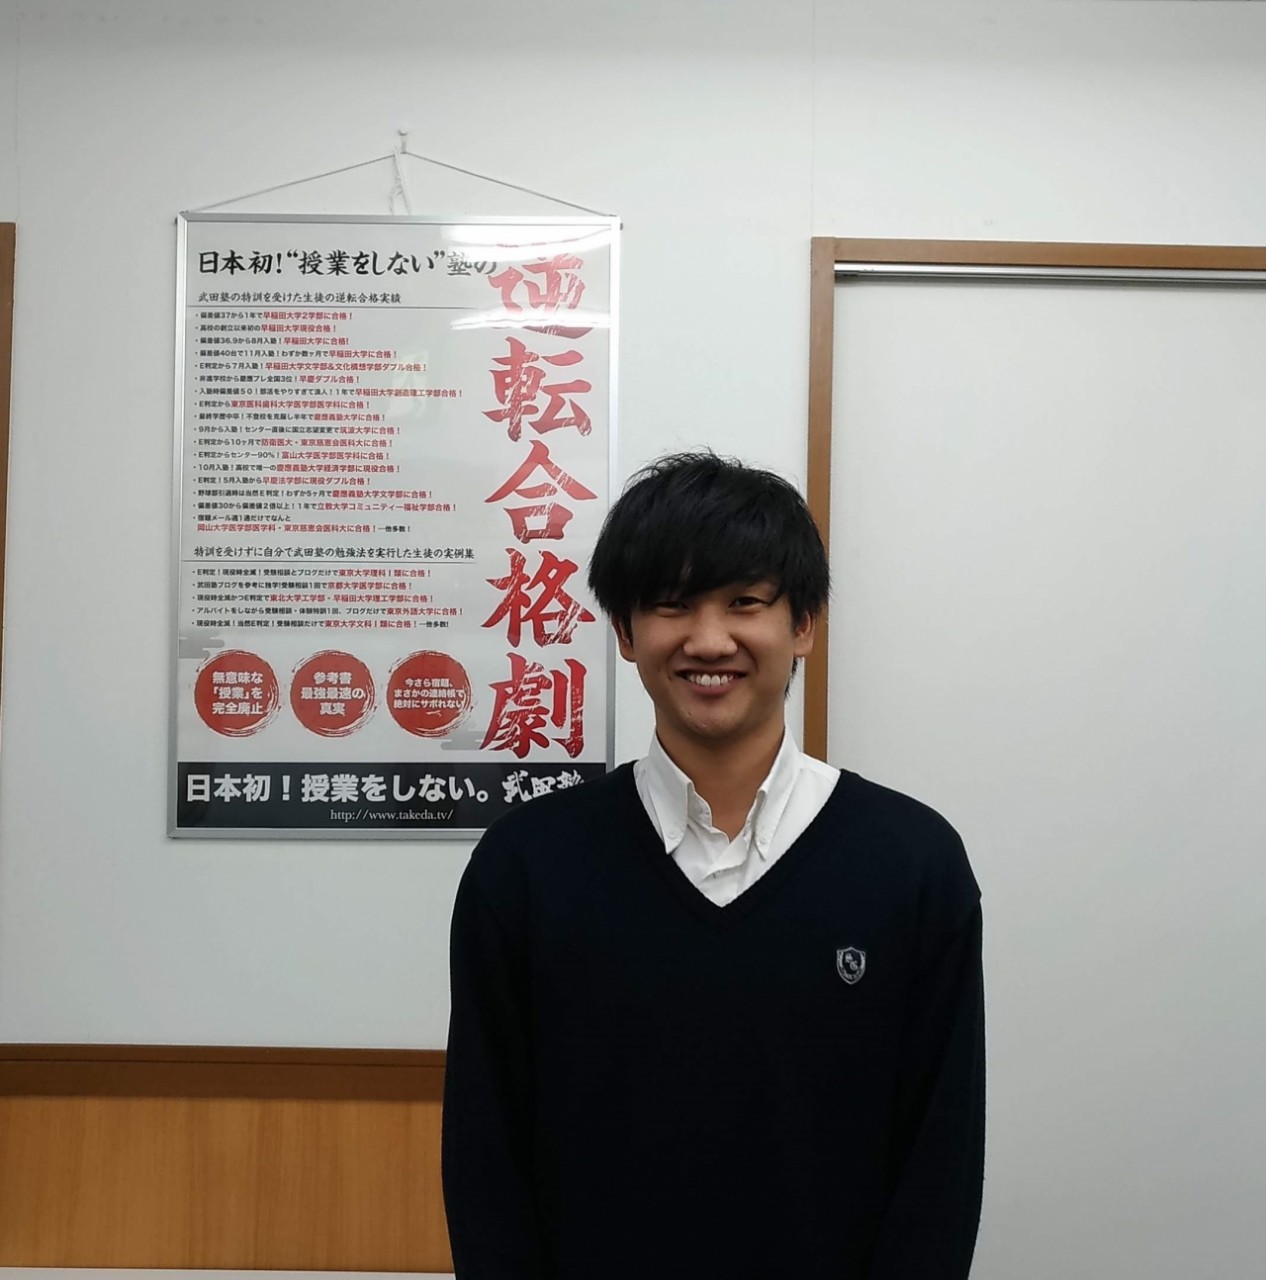 前田達也龍谷大学文学部特待生で合格